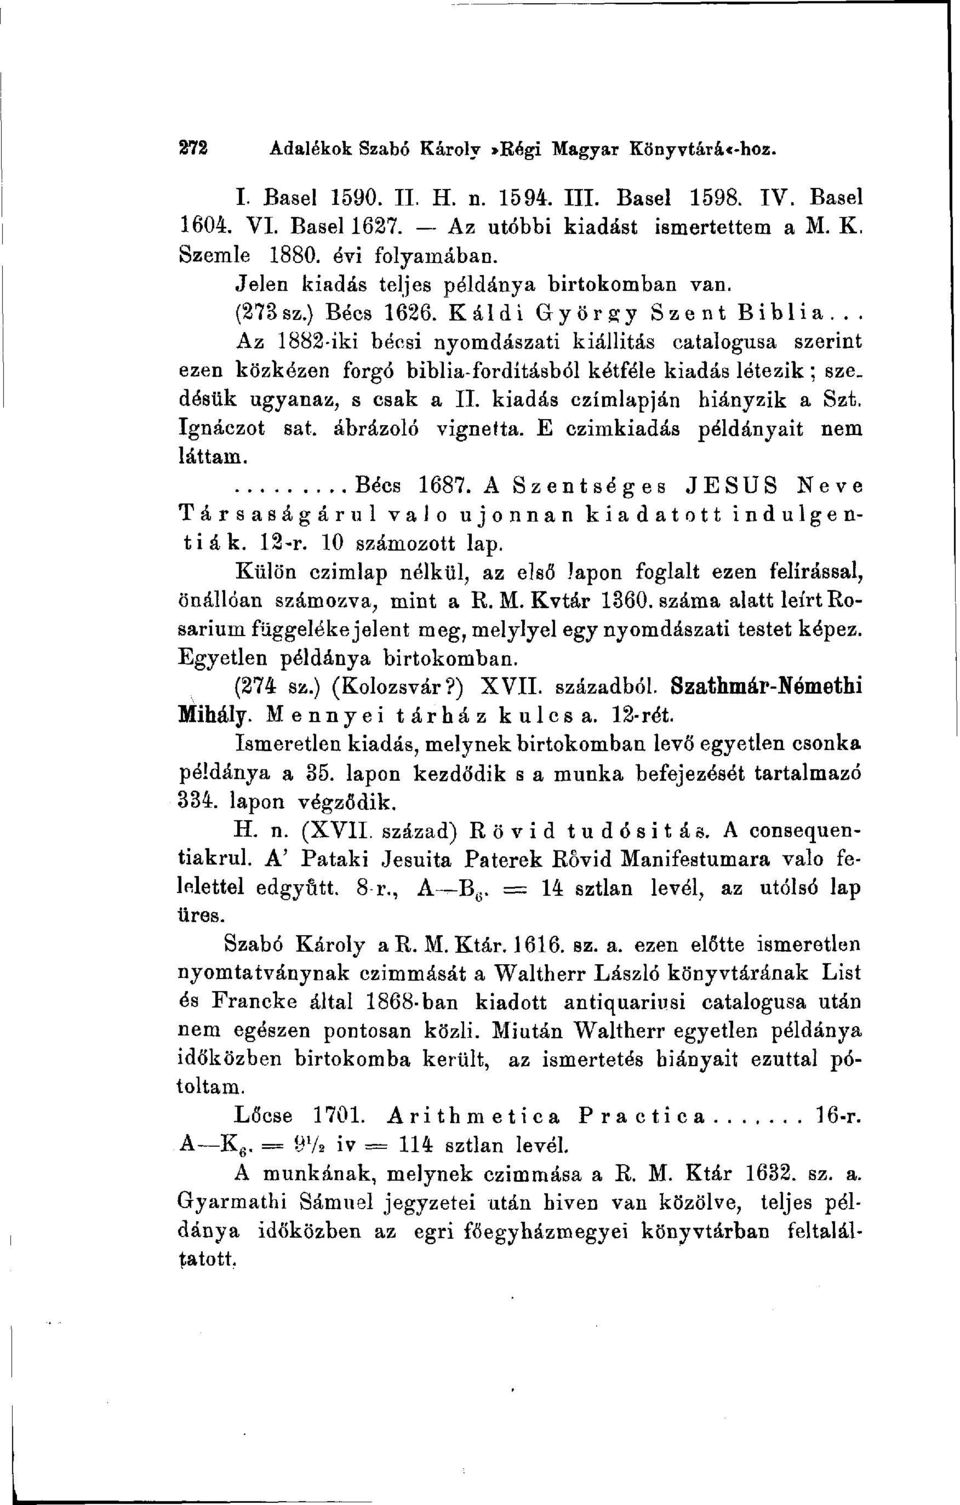 .. Az 1882-iki bécsi nyomdászati kiállítás catalogusa szerint ezen közkézen forgó biblia-fordításból kétféle kiadás létezik ; sze. désük ugyanaz, s csak a II. kiadás czímlapján hiányzik a Szt.